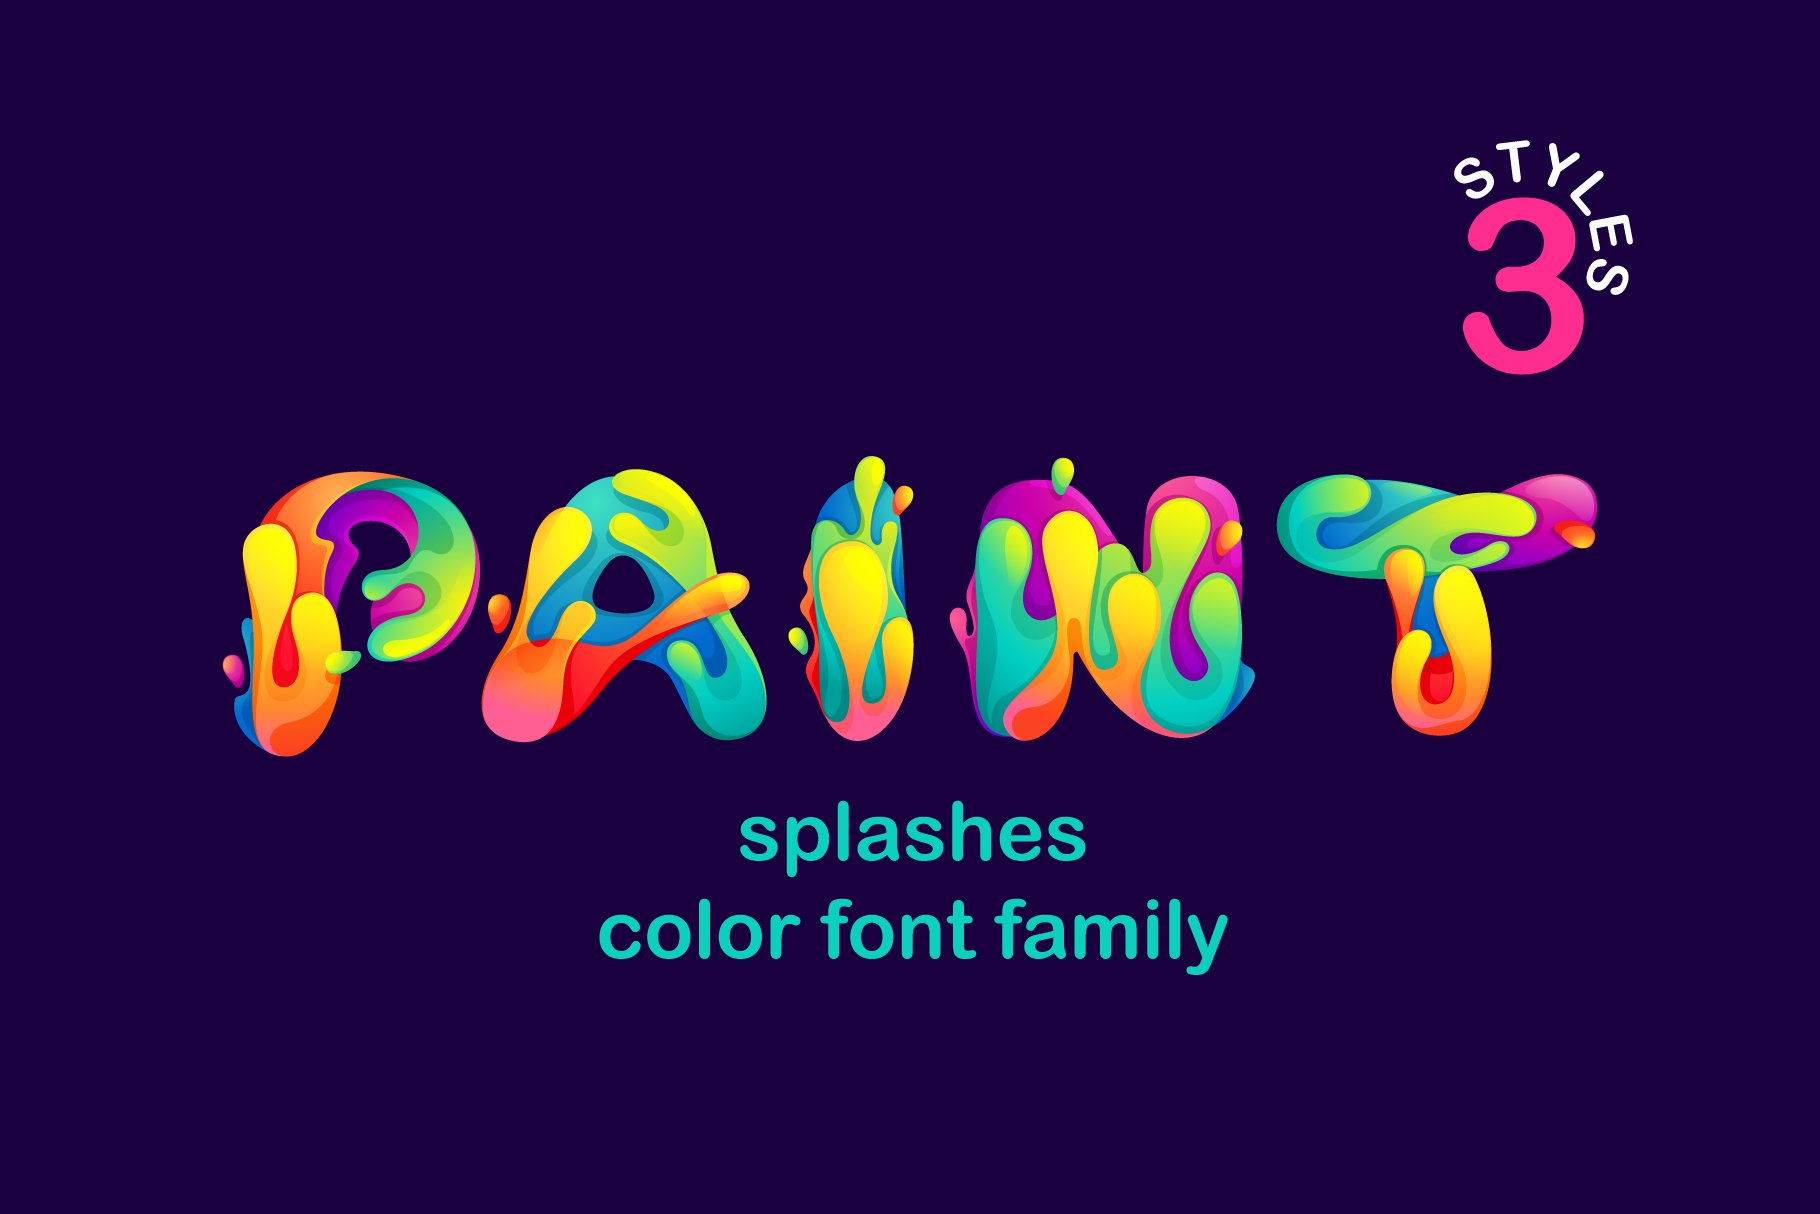 Paint Splashes Color Font cover image.